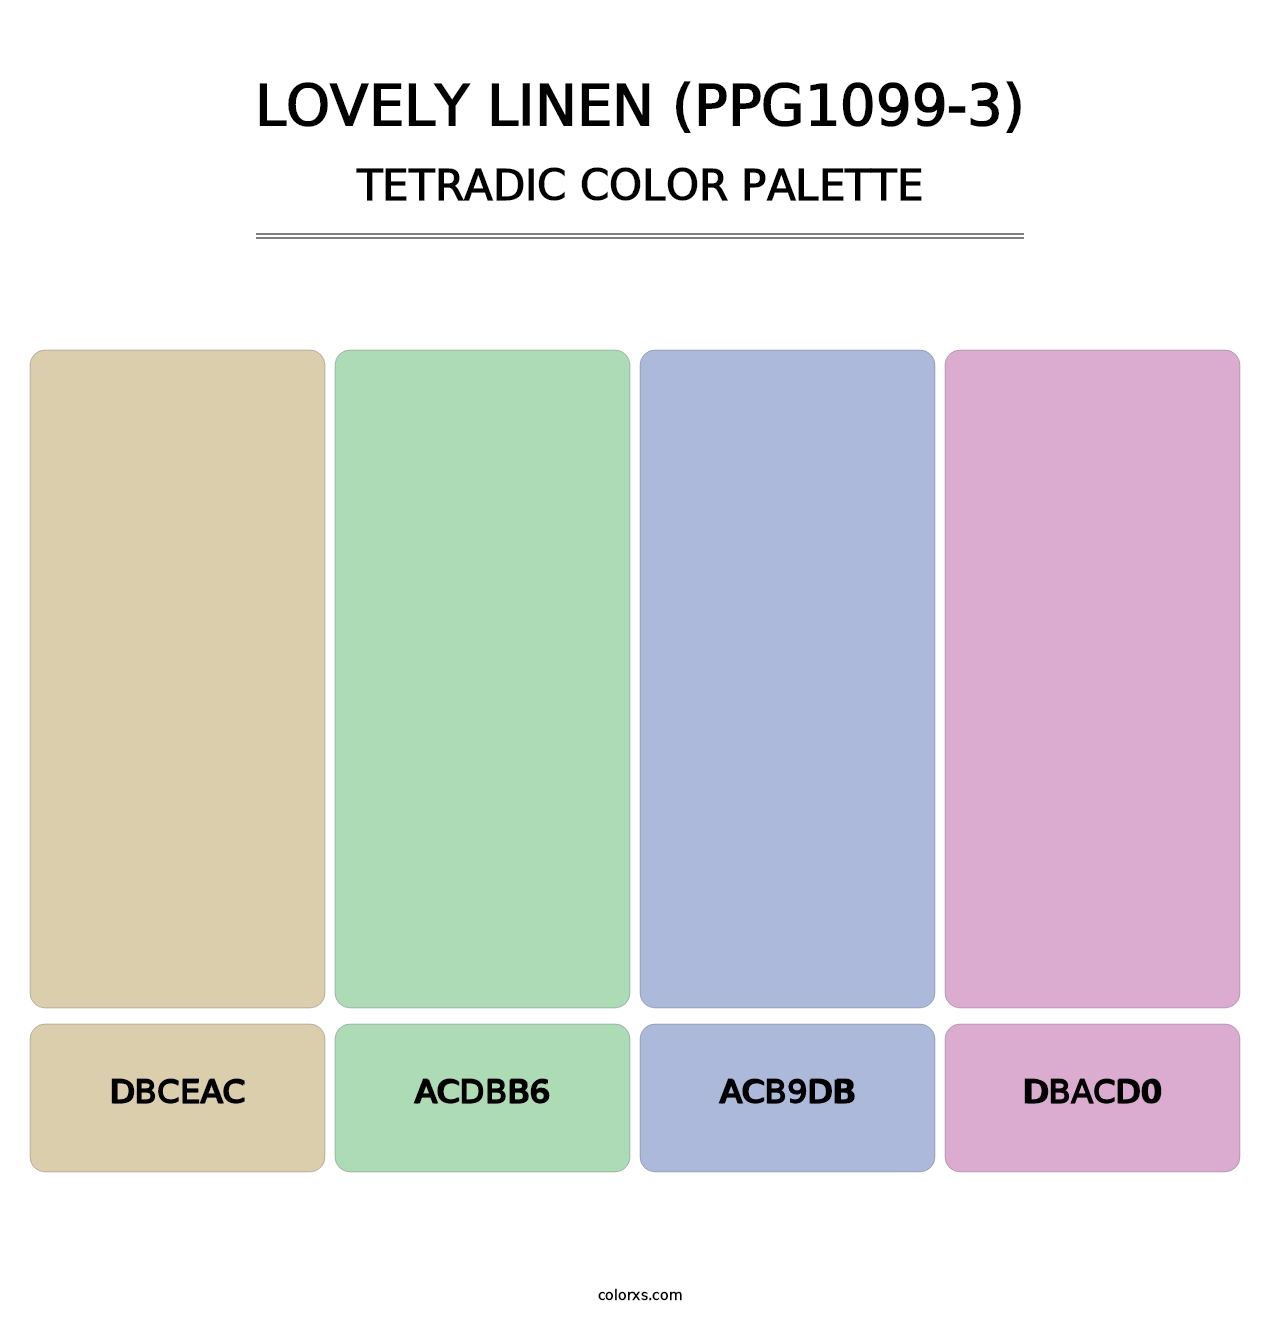 Lovely Linen (PPG1099-3) - Tetradic Color Palette